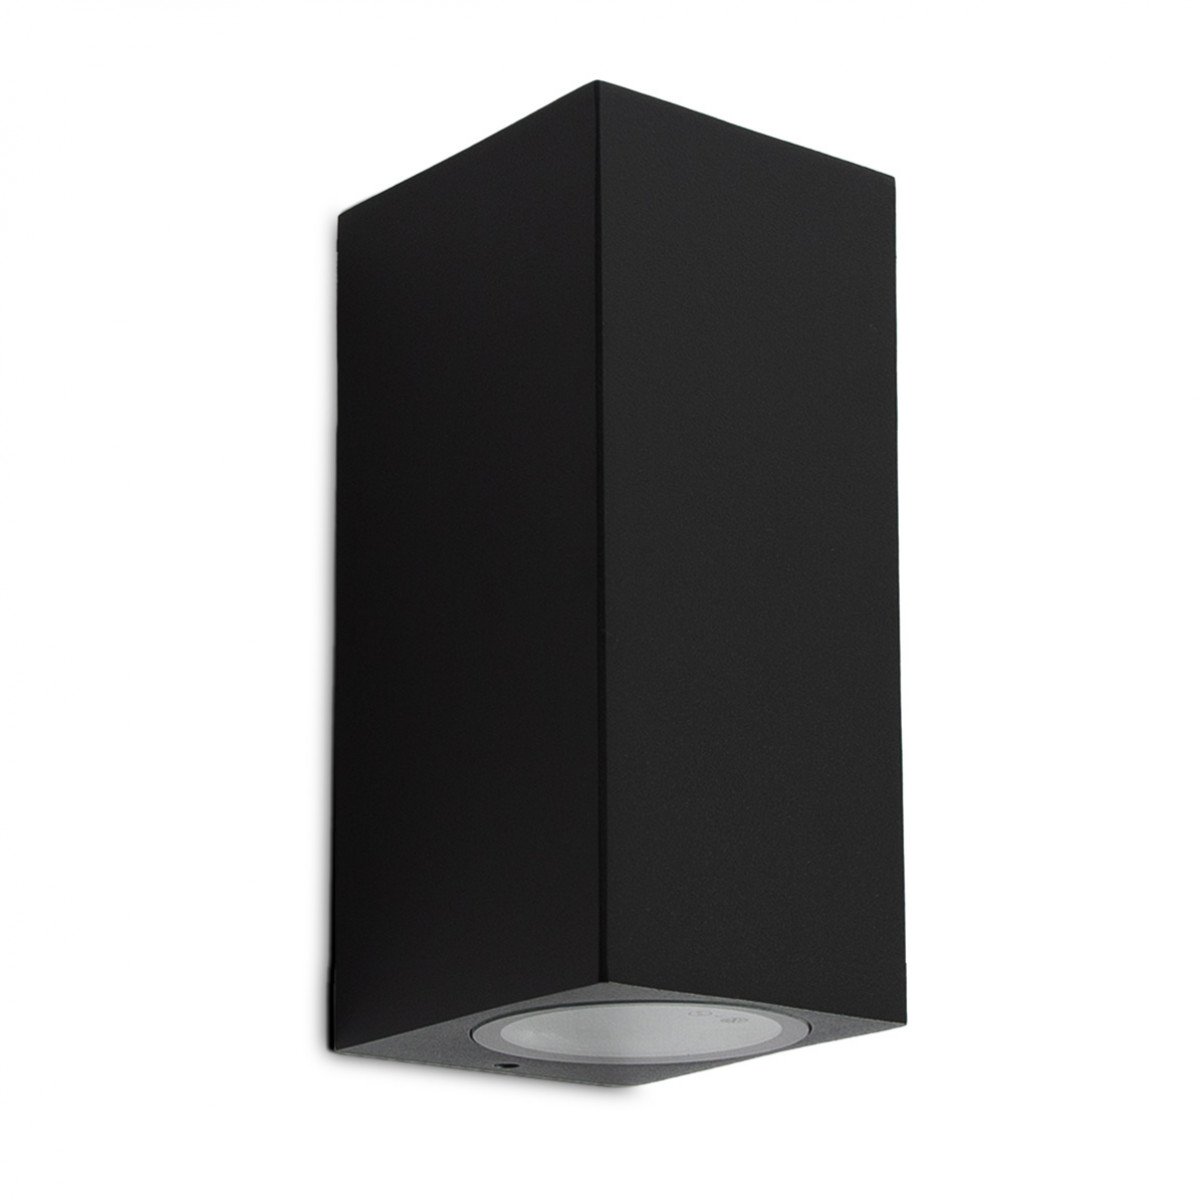 Wandspot kubus zwart, up en downlighter, design muurspot, perfect toepasbaar als gevelverlichting, KS kwaliteitsverlichting, moderne wandspot met 2 lichtbundels